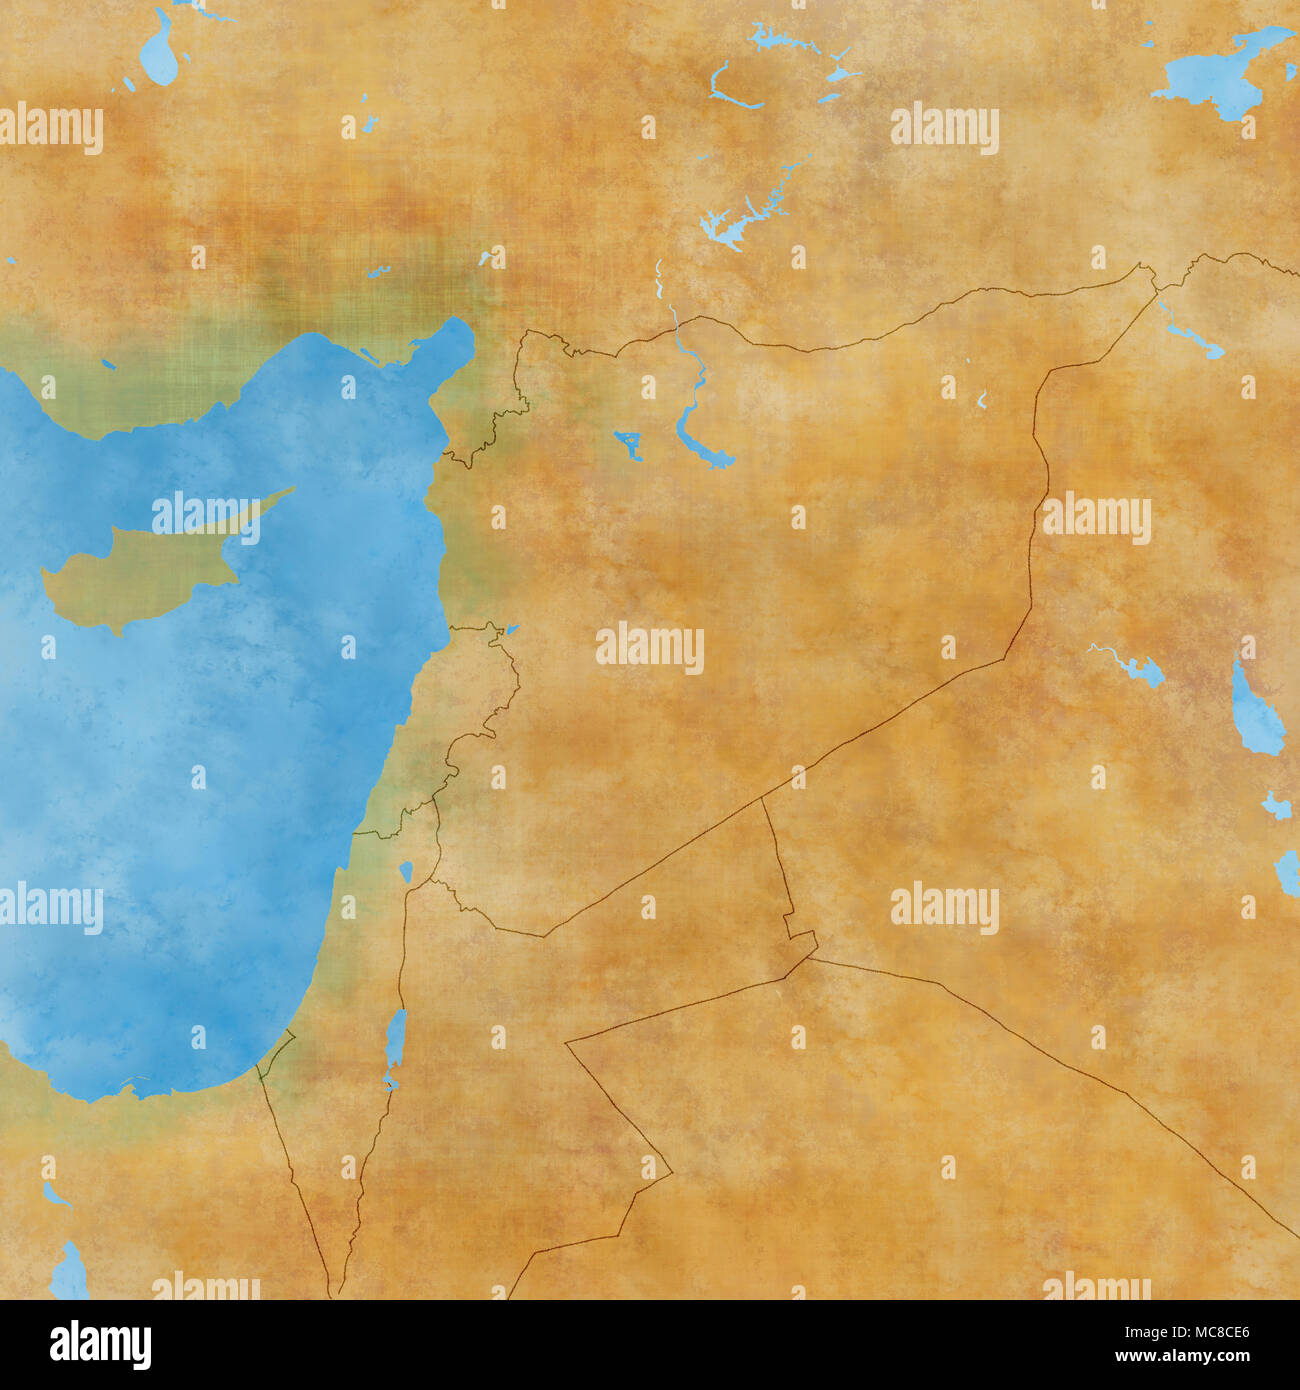 Karte von Syrien und Grenzen, physische Karte Naher Osten, Arabische Halbinsel, Reliefs und Berge und das Mittelmeer. Karte auf Pergament. Hand gezeichnet Stockfoto